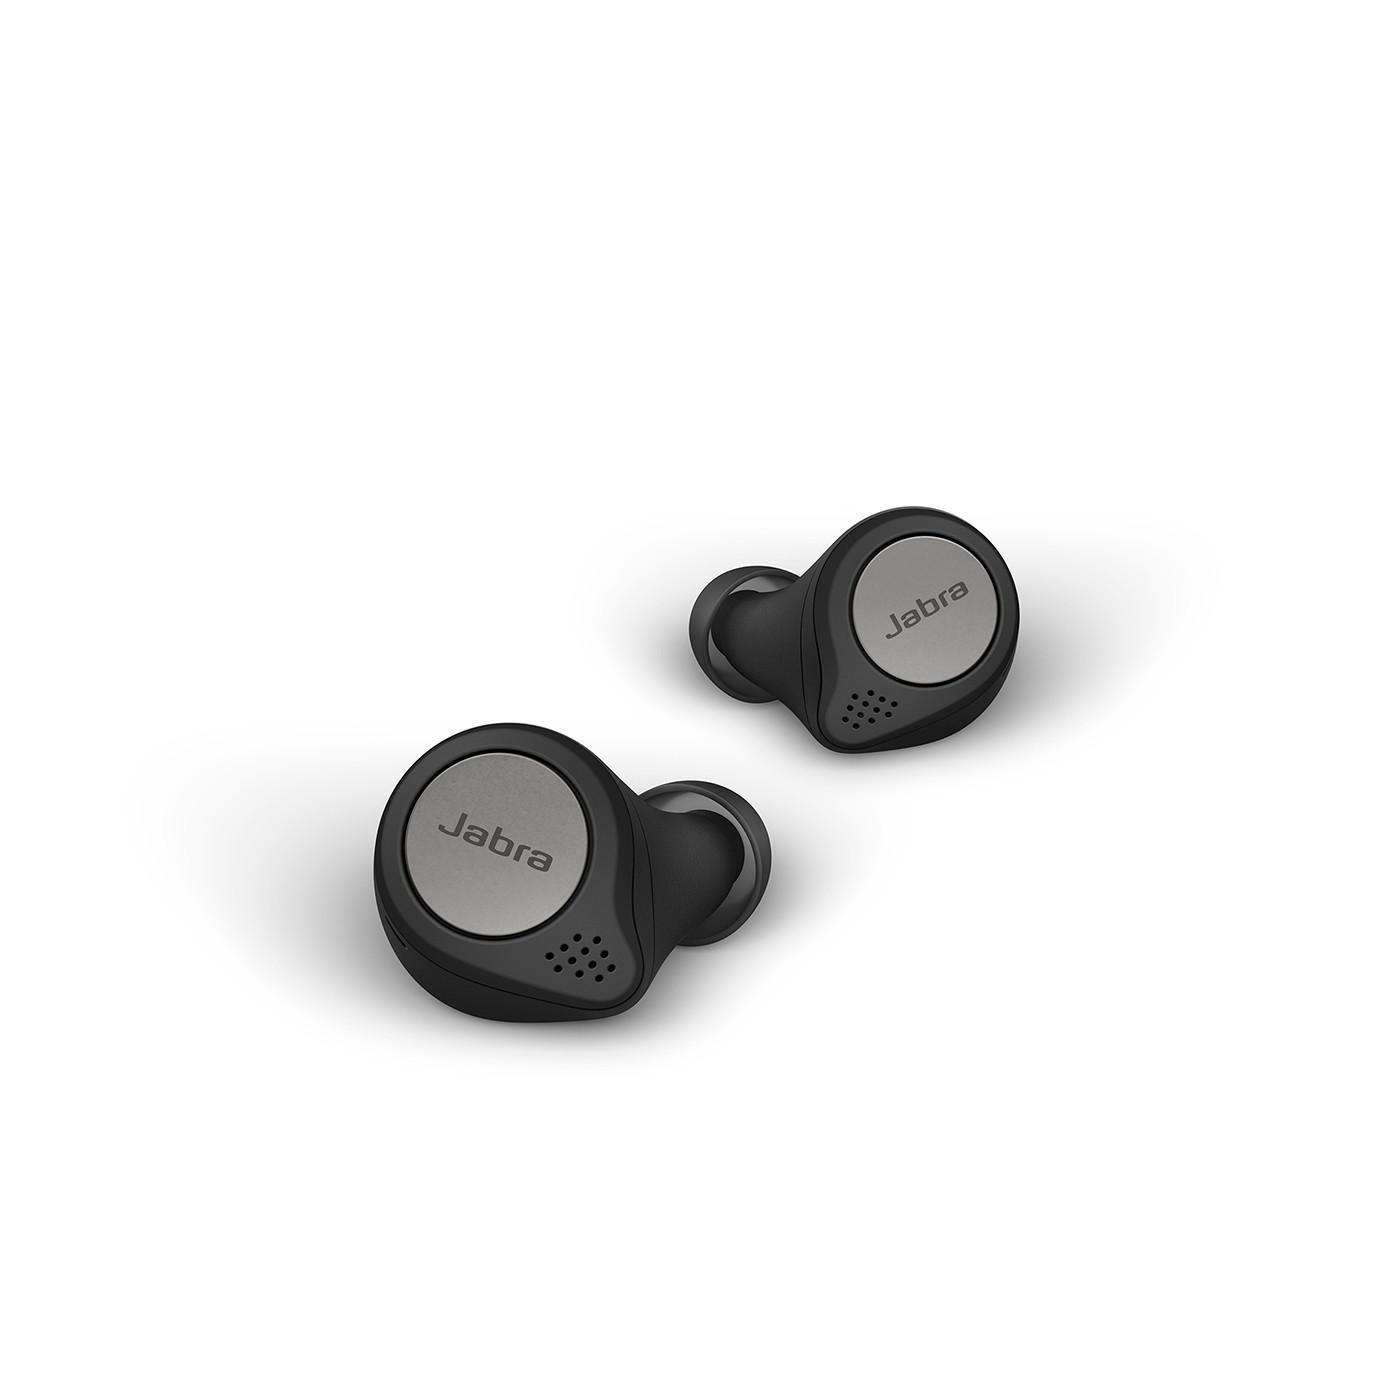 Bluetooth 75t In-ear mit Elite JABRA Schwarz Kopfhörer Active ANC, Titan